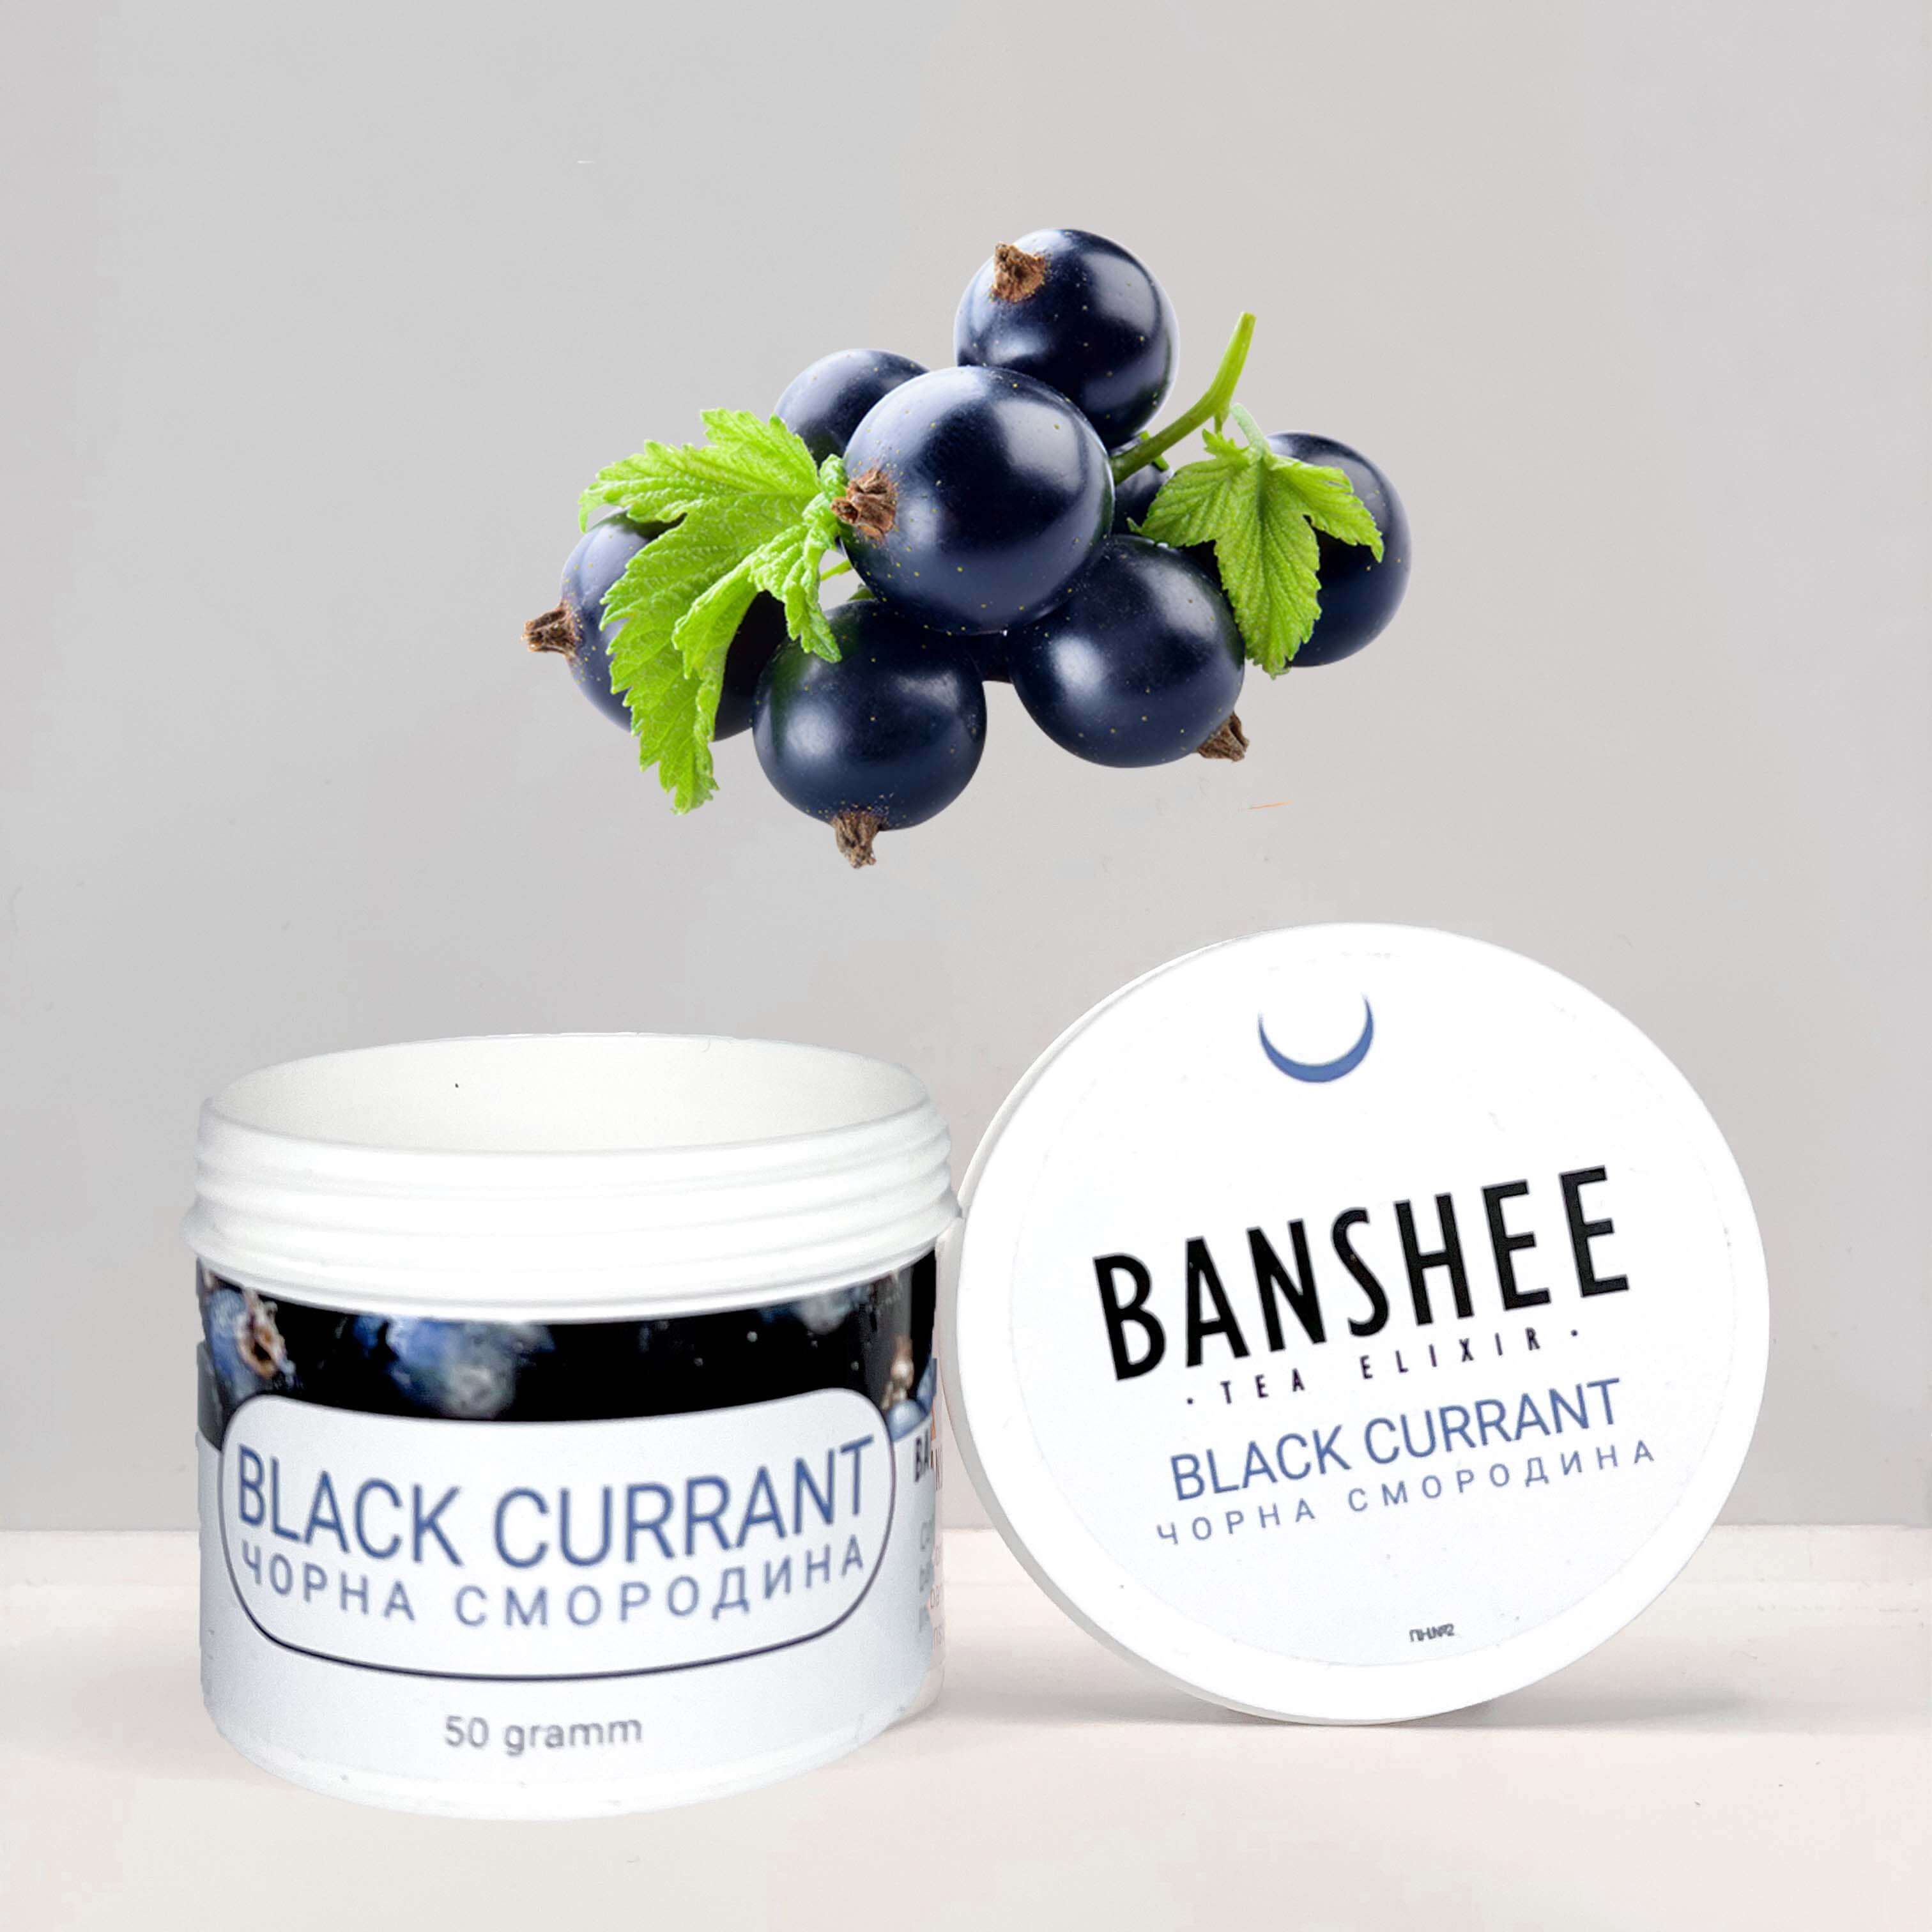 Banshee Blackcurrant (Черная смородина) 50 грамм